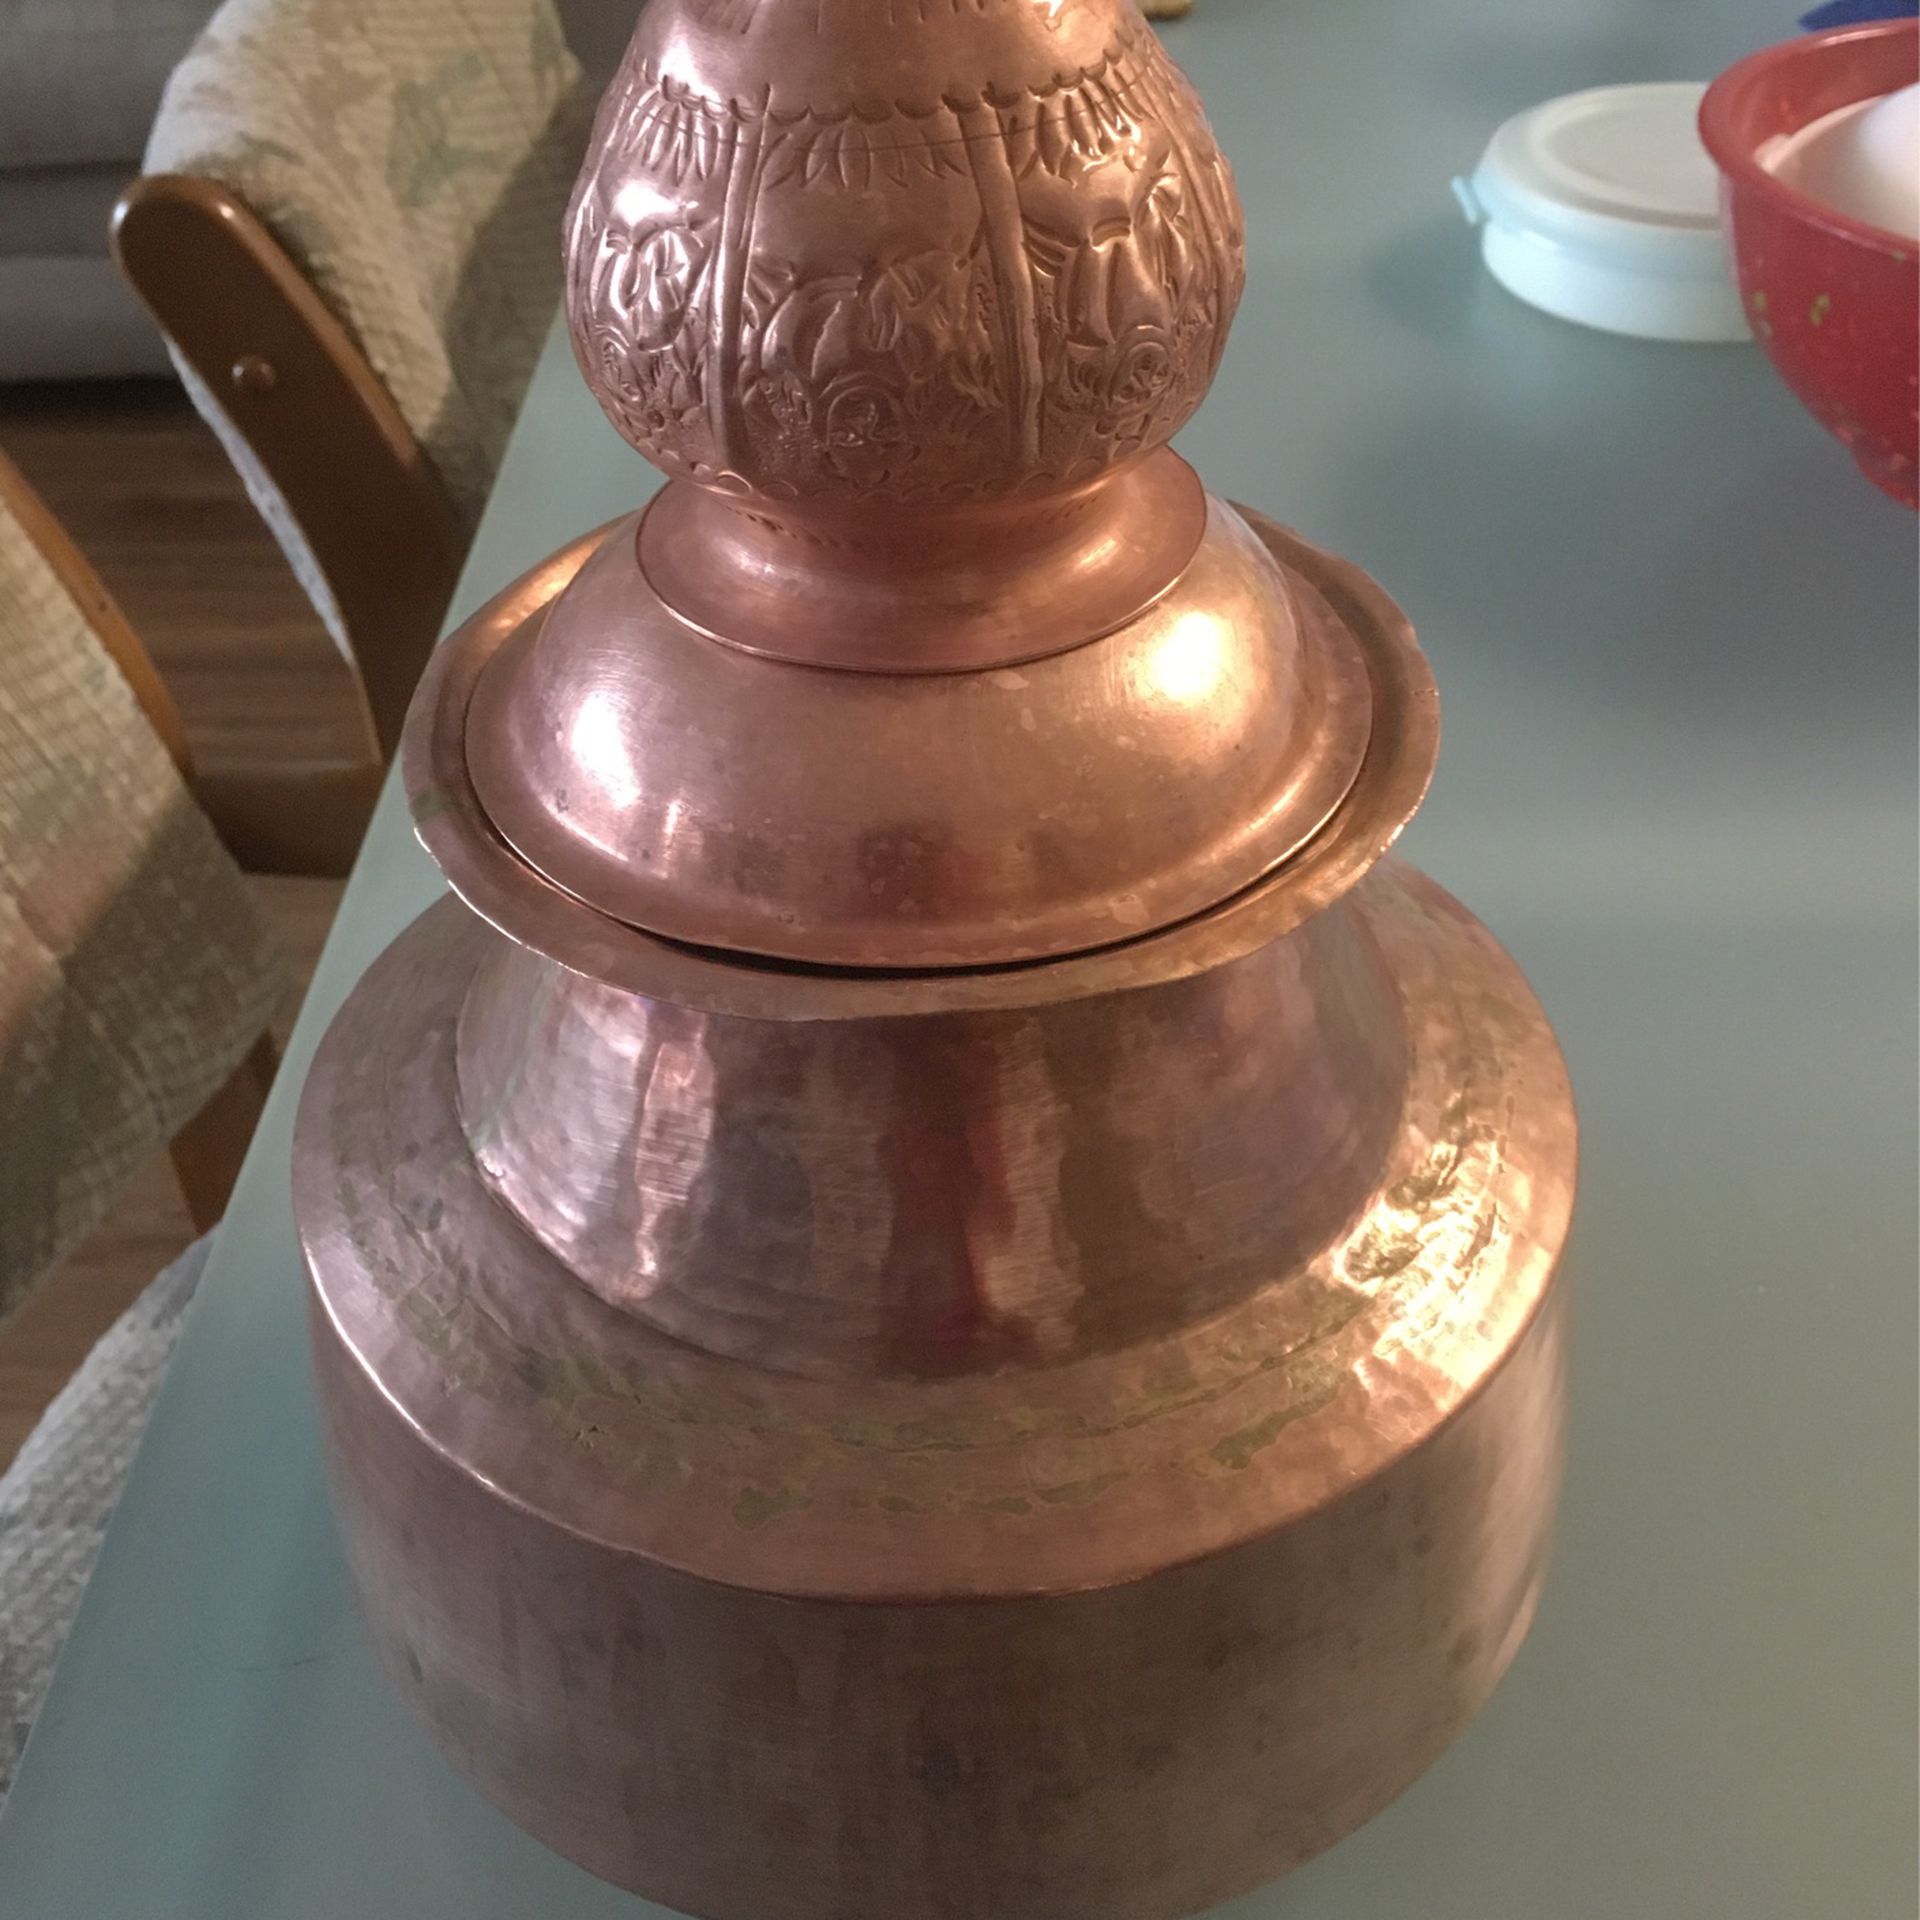 Copper pot 2 gallon